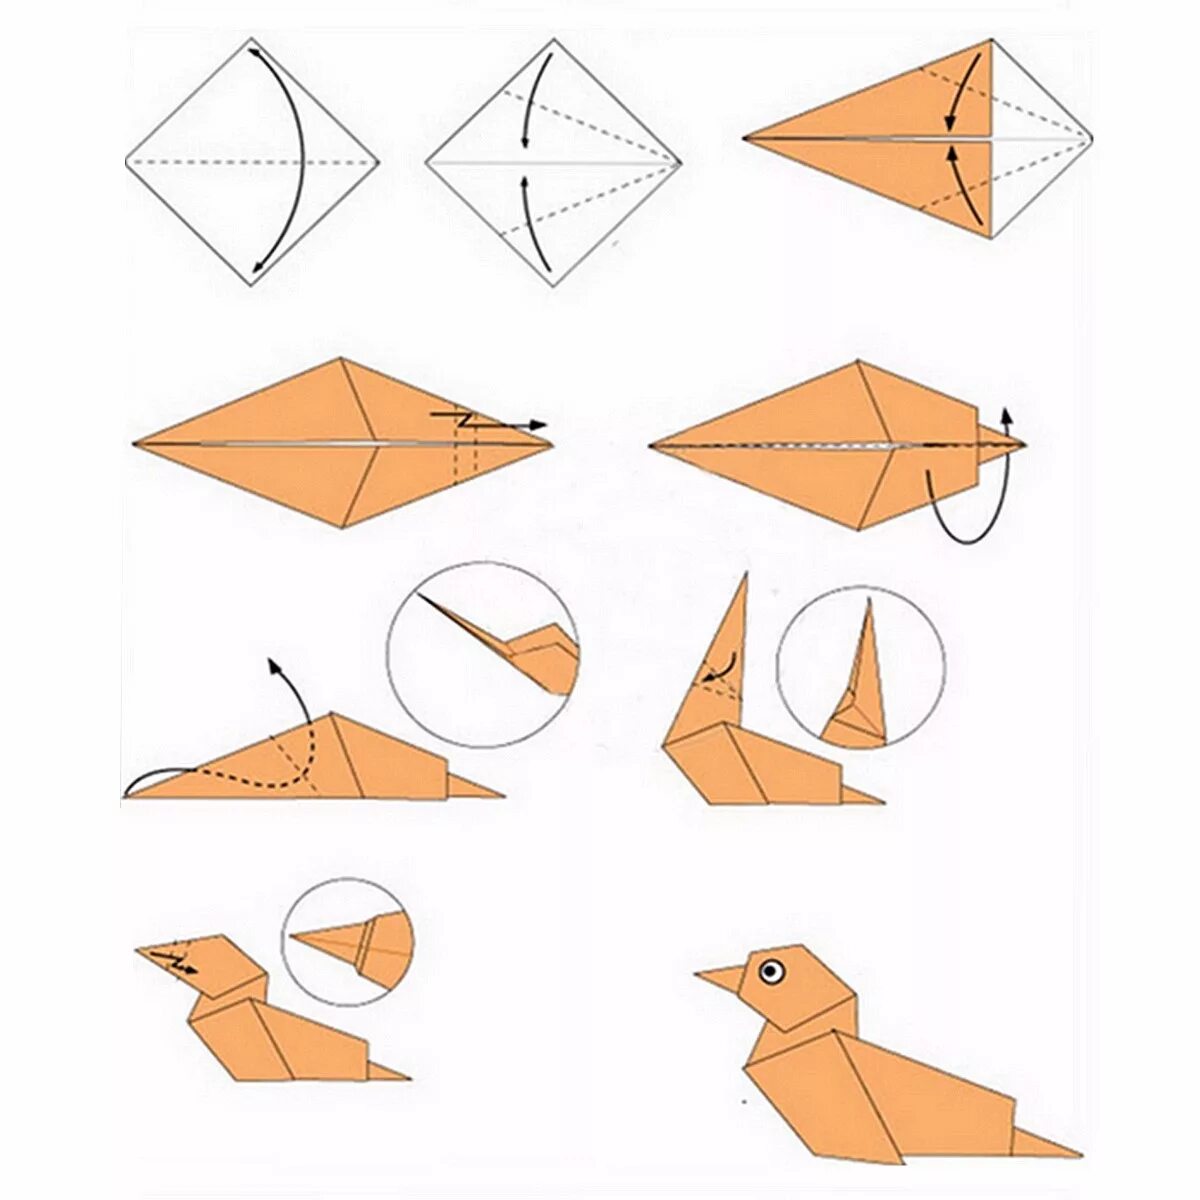 Пошаговое оригами для начинающих. Схема как делать оригами. Как сложить оригами из бумаги для начинающих. Схемы оригами легкие пошагово. Оригами из бумаги для начинающих животные пошагово схемы.